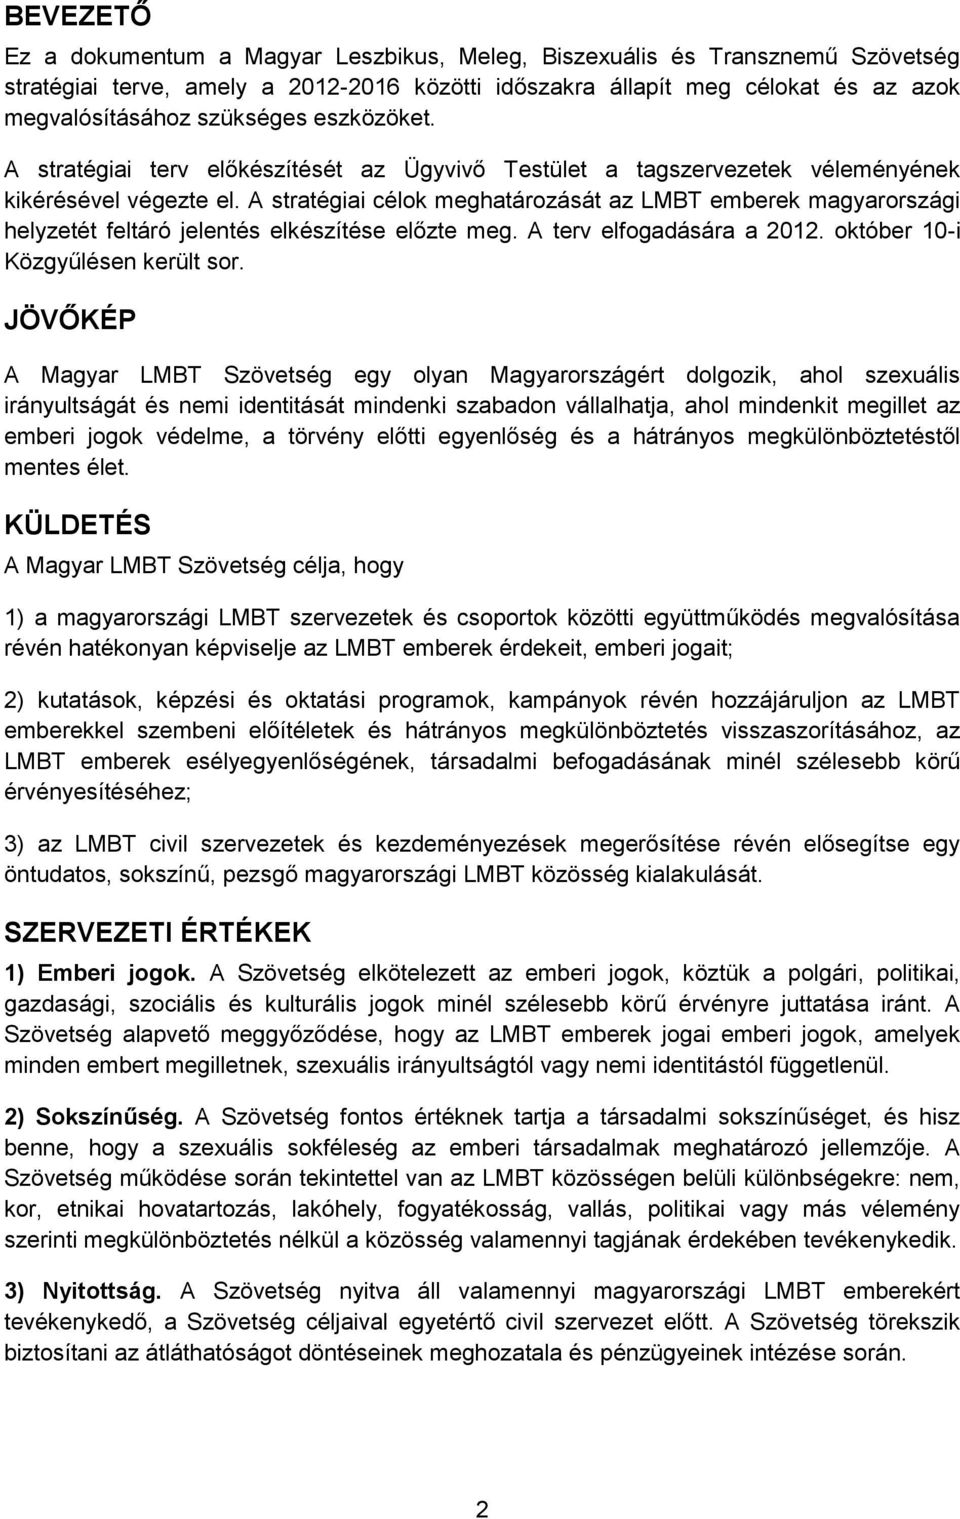 A stratégiai célok meghatározását az LMBT emberek magyarországi helyzetét feltáró jelentés elkészítése előzte meg. A terv elfogadására a 2012. október 10-i Közgyűlésen került sor.